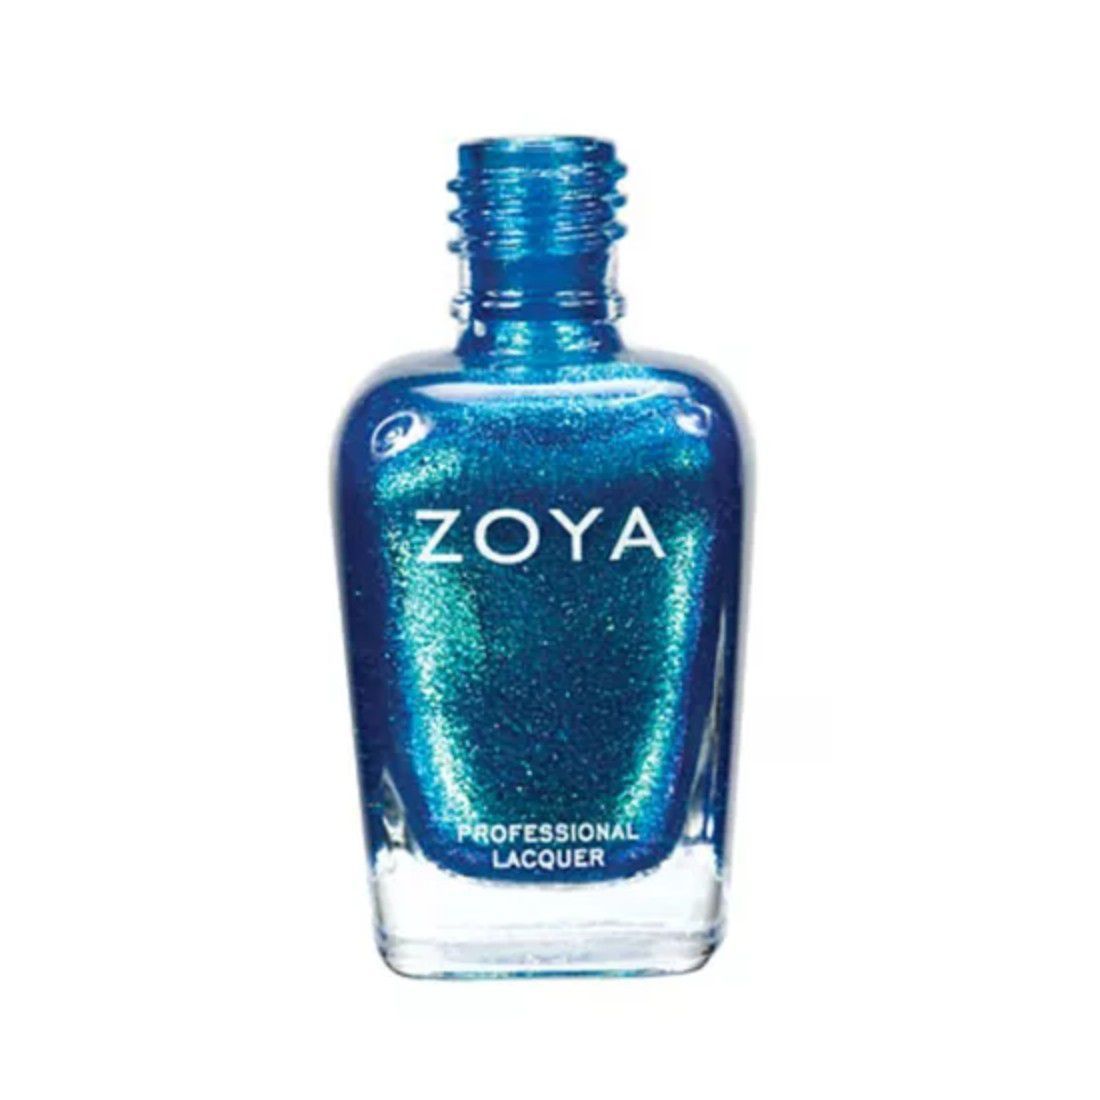 Botella de esmalte de uñas brillante azul y verde que cambia de color.